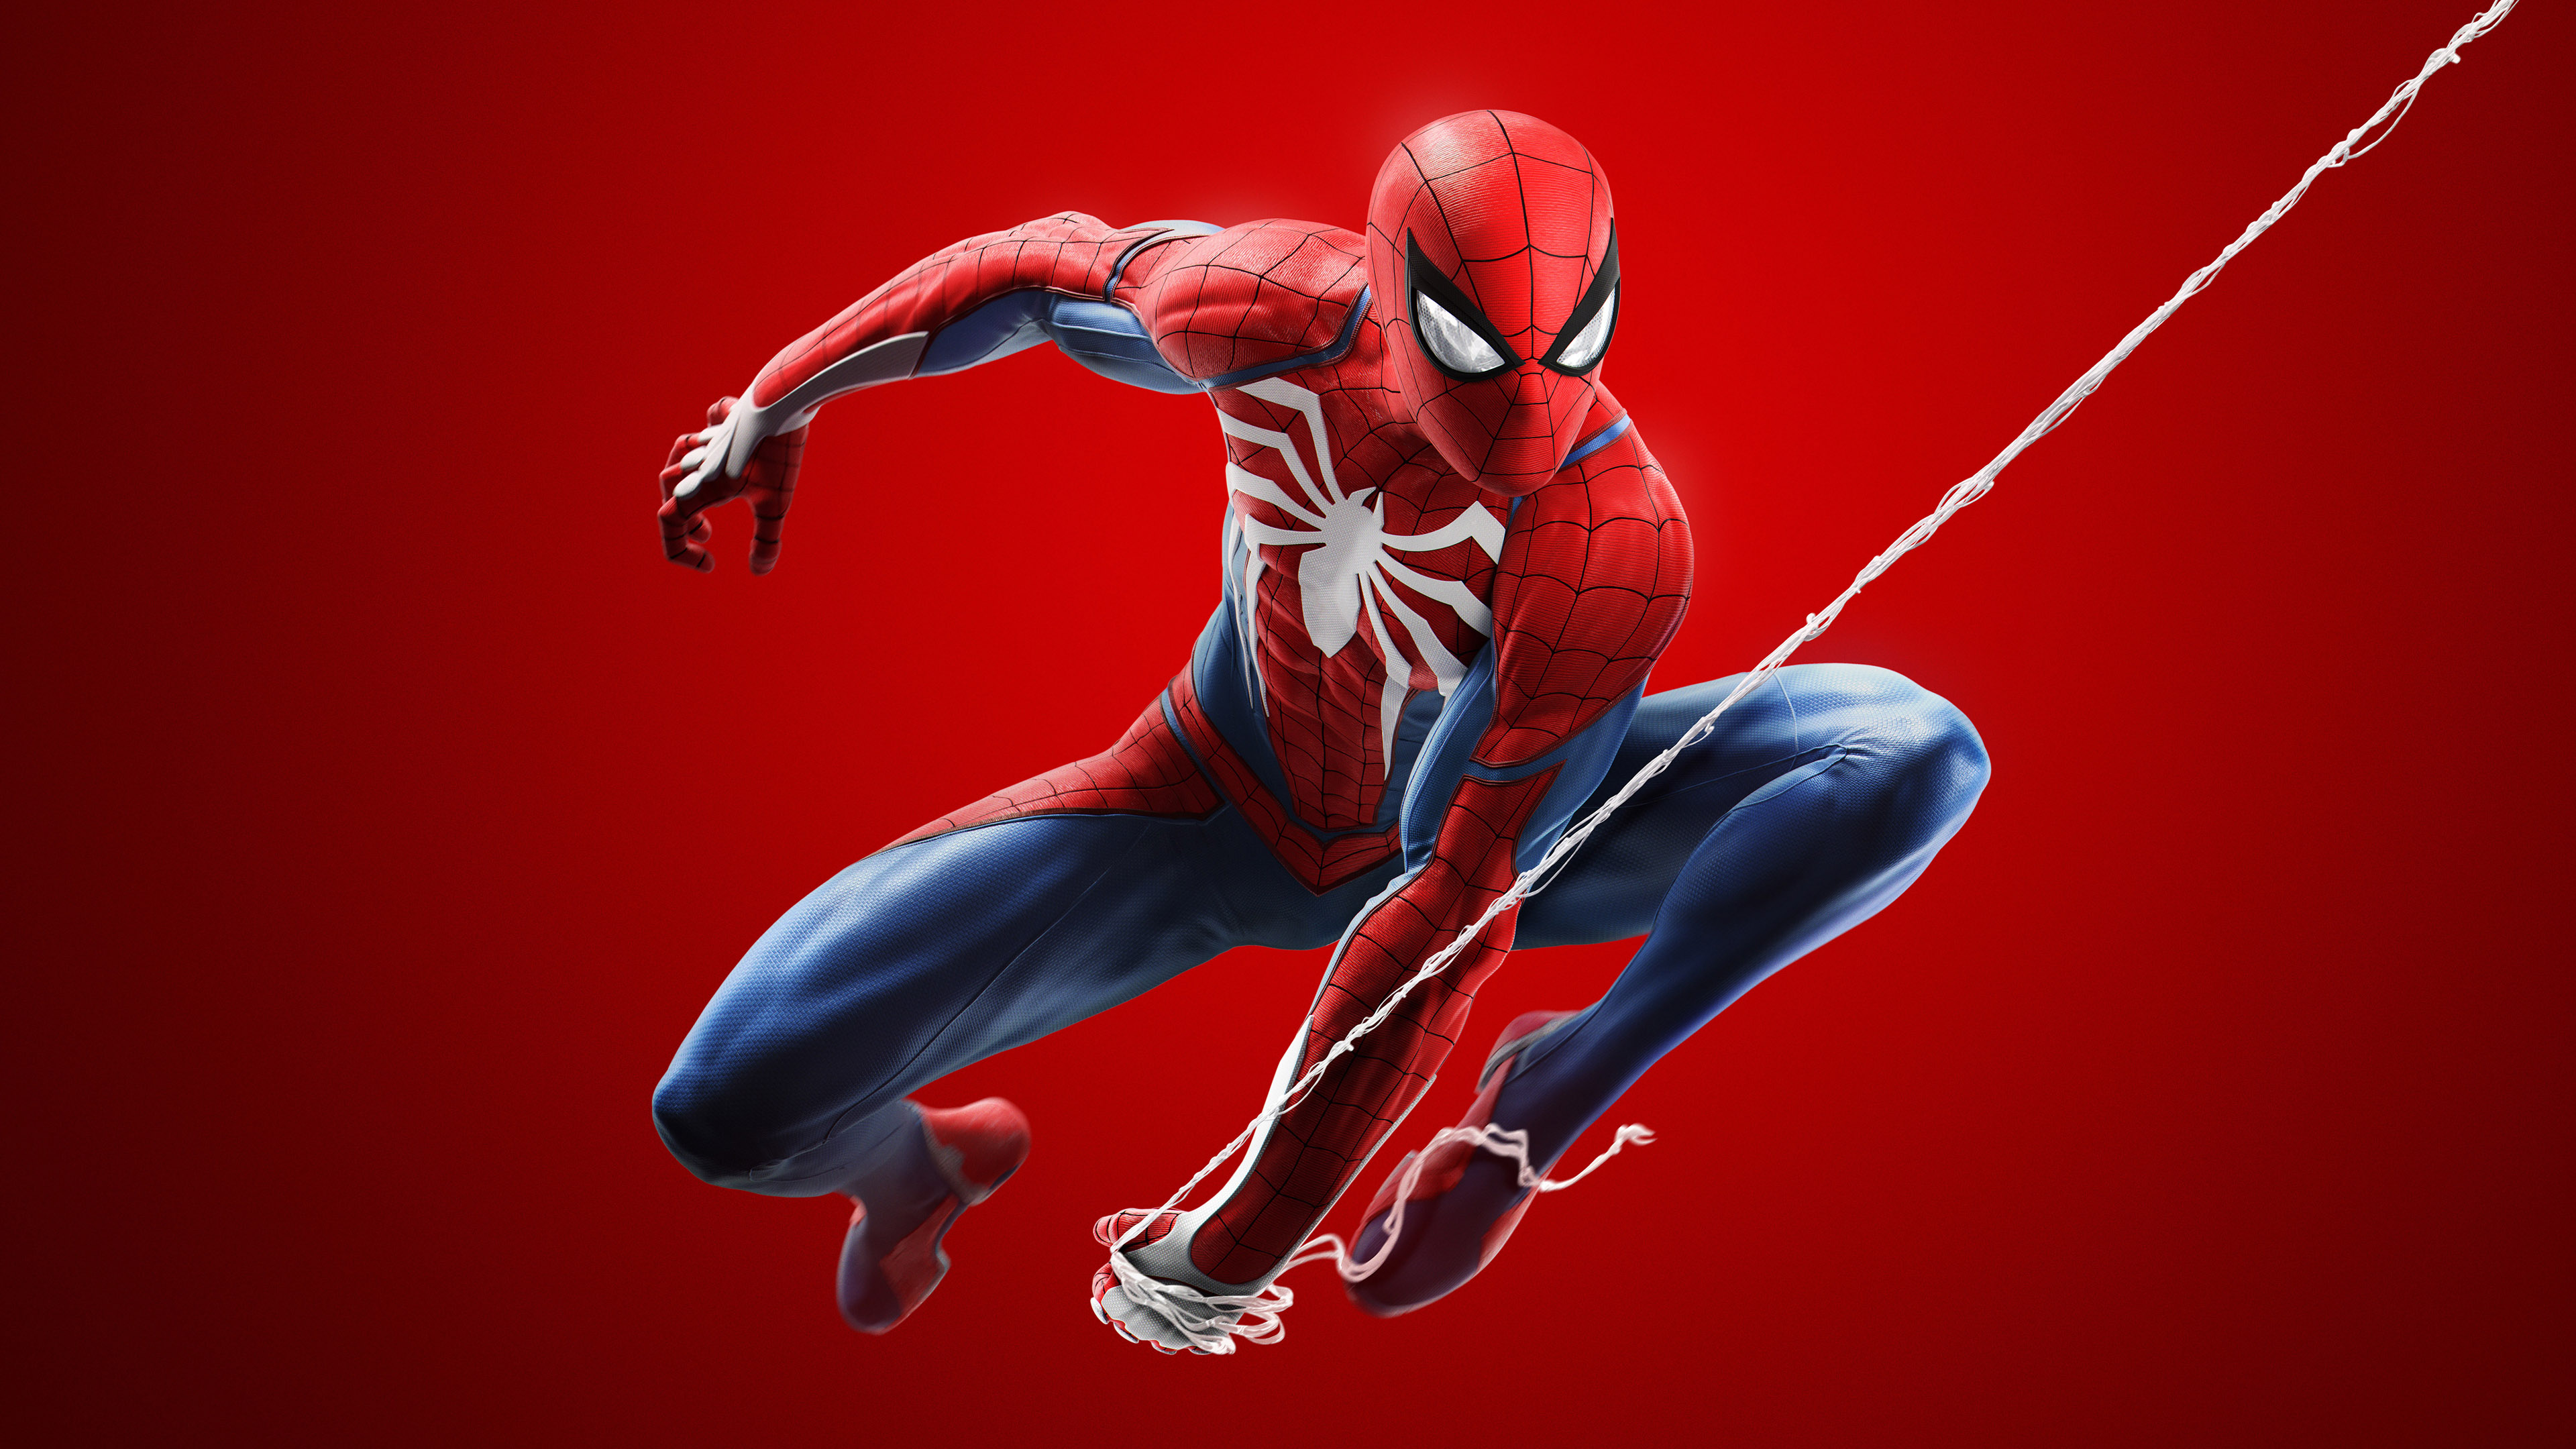 download marvel spider man 2